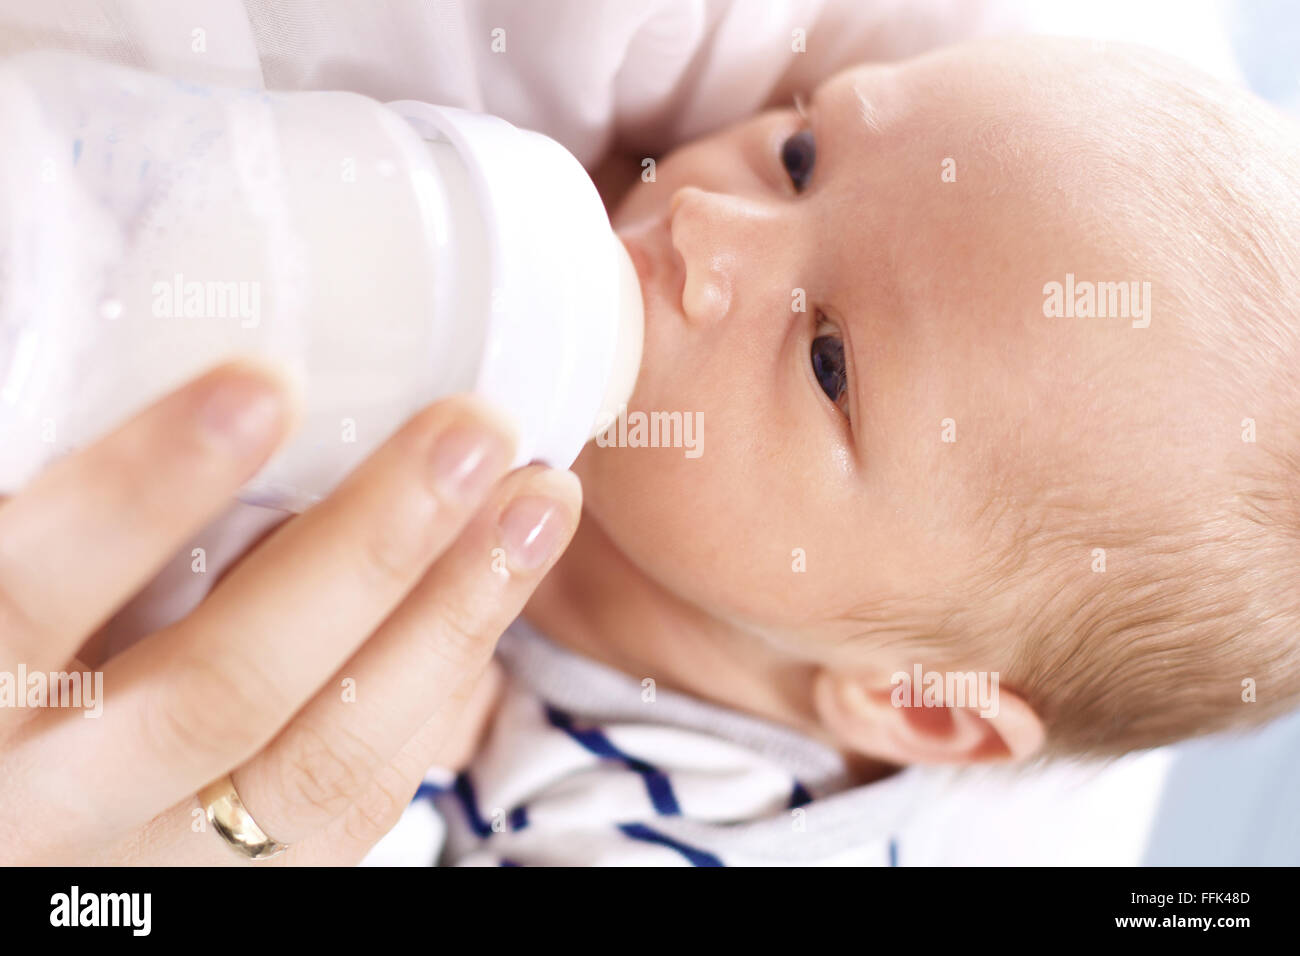 Bottiglia-fed baby. Una donna che alimenta un neonato con latte modificati da una bottiglia. La madre è la alimentazione neonato Foto Stock